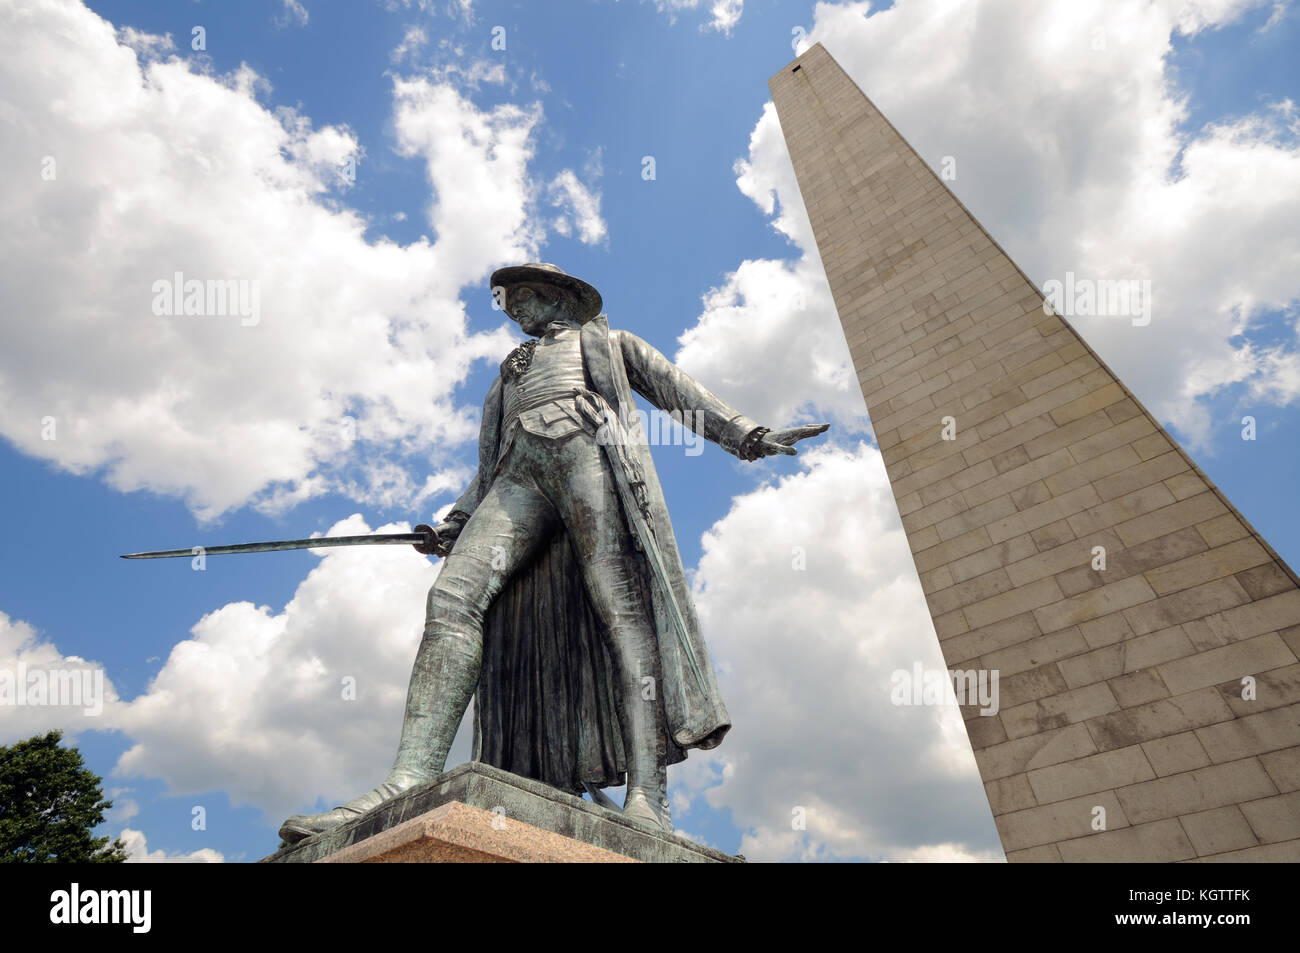 Bunker hill Monument en Boston, Massachusetts. Granito obelisco y la estatua de bronce del coronel William Prescott, quien comandaba las fuerzas patriotas aquí Foto de stock